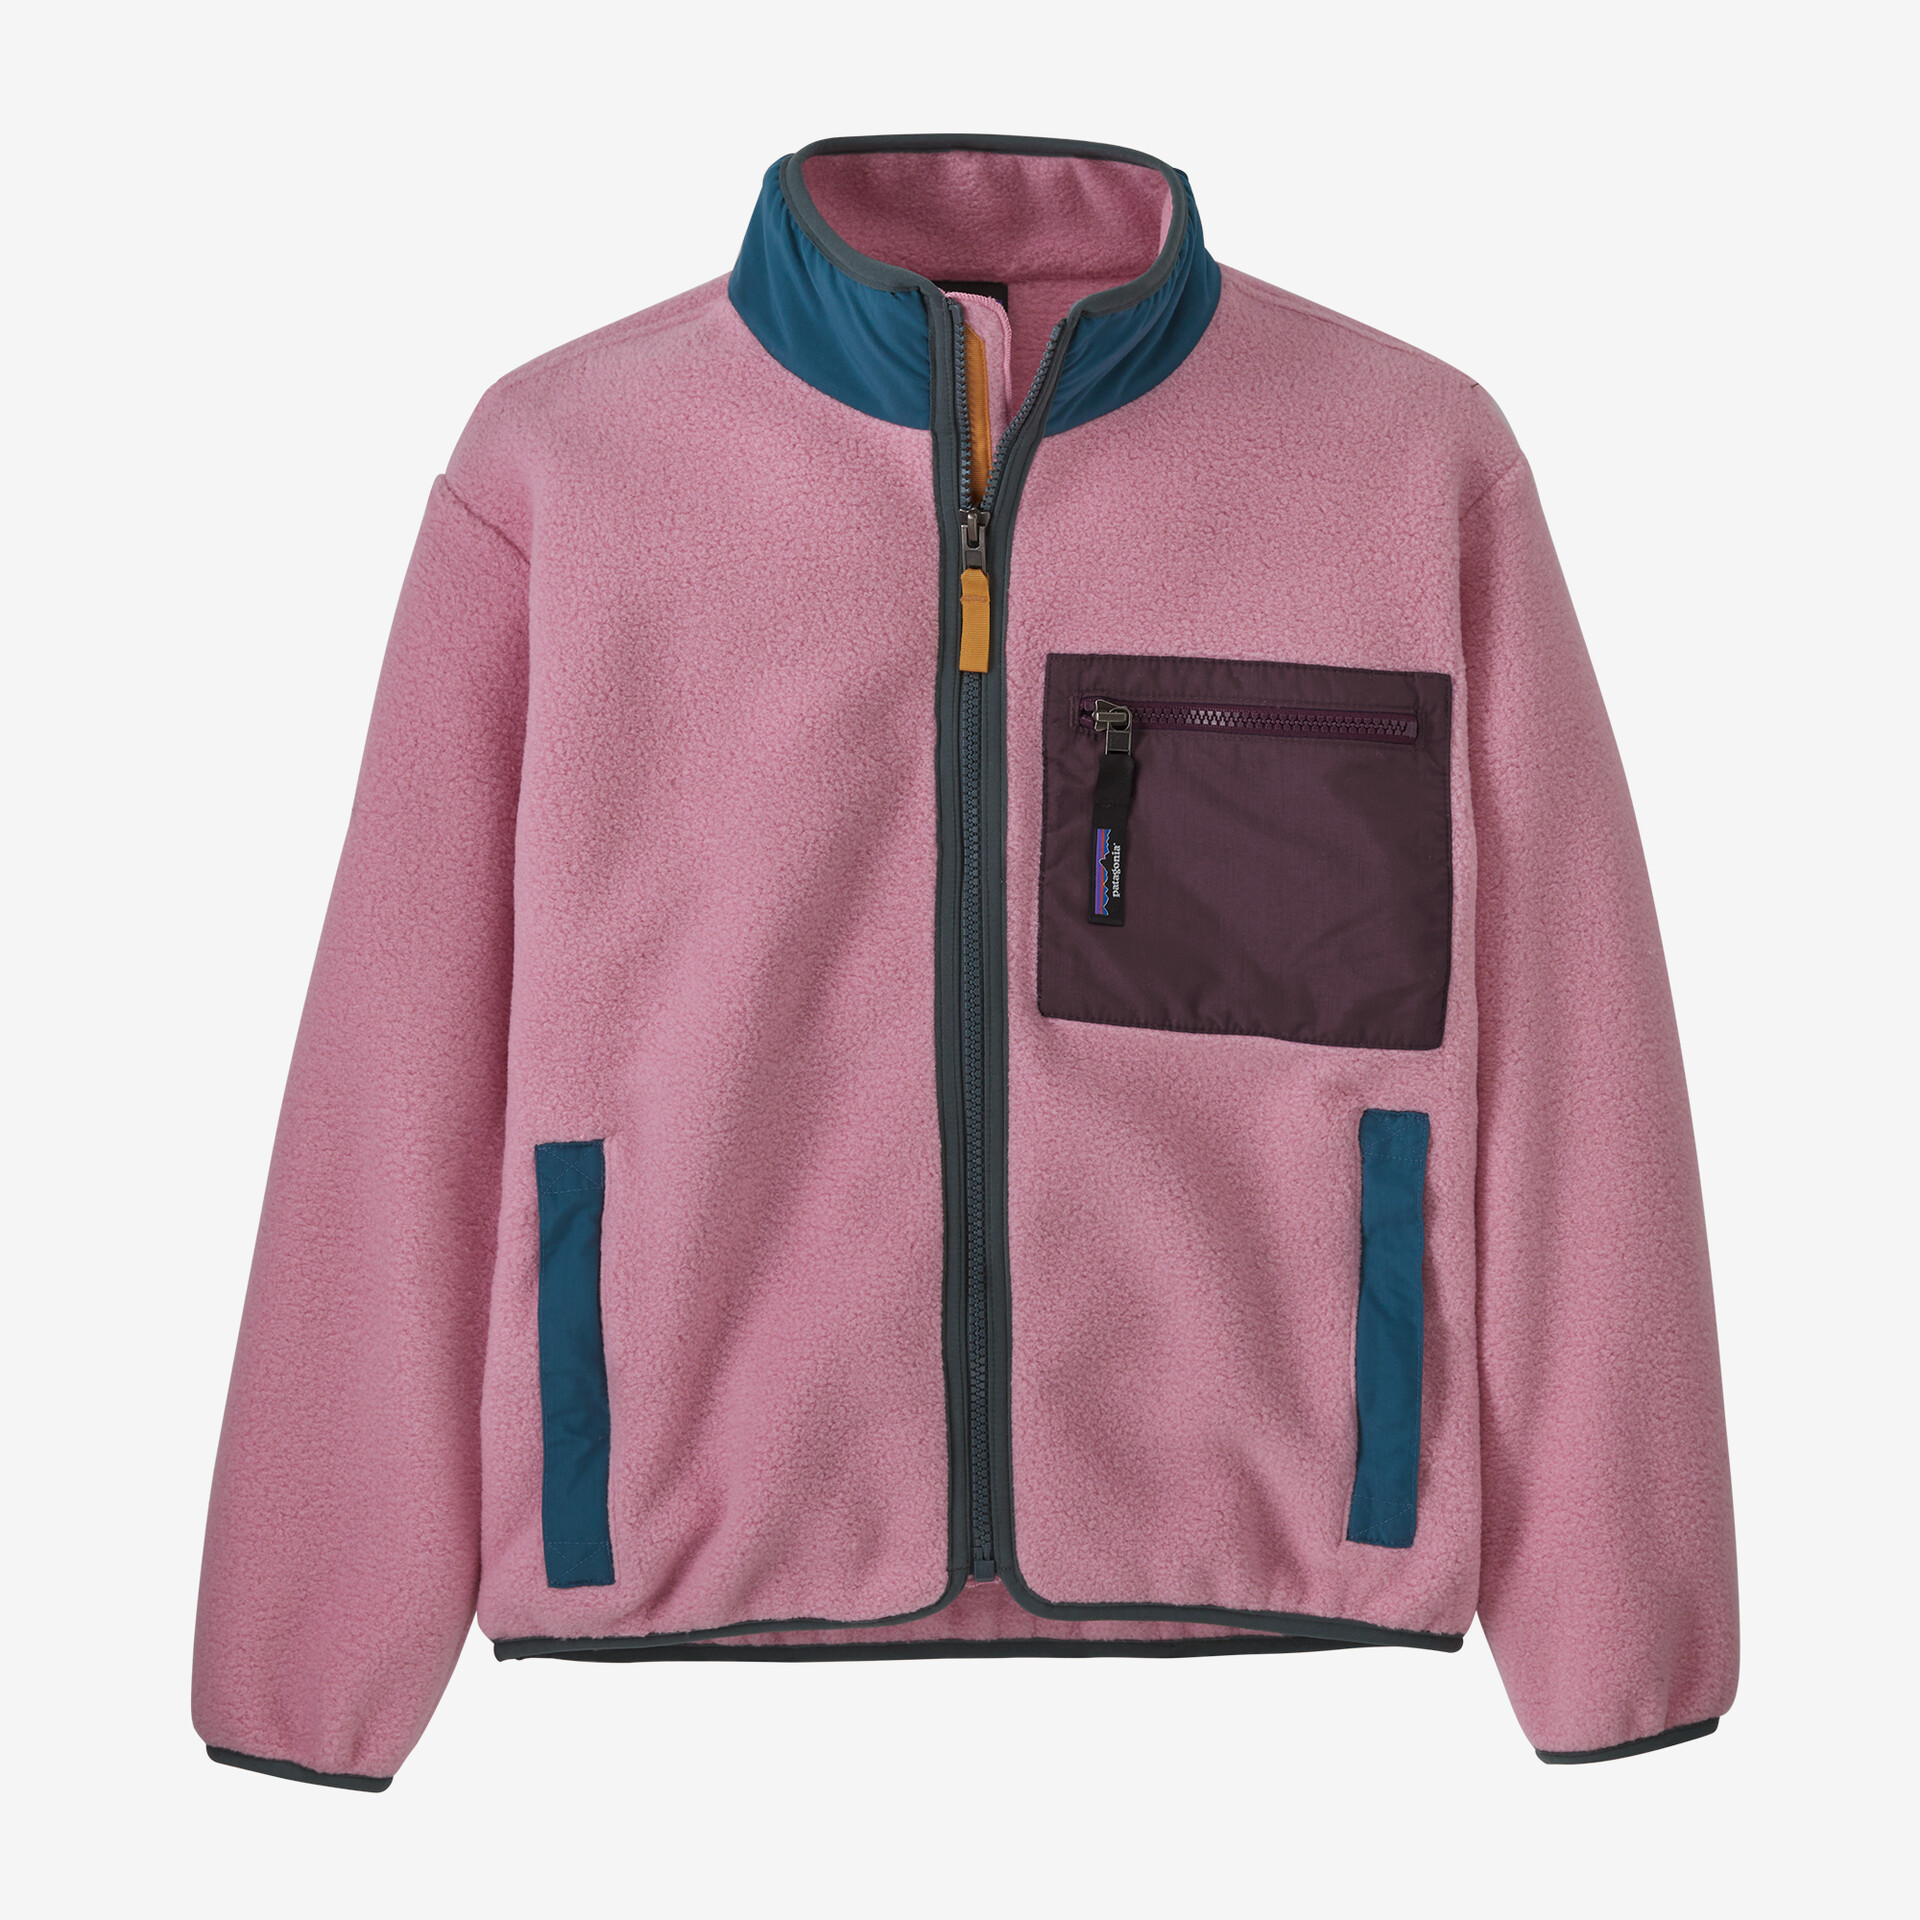 Детская флисовая куртка Synchilla Patagonia, цвет Planet Pink куртка patagonia quilted puff цвет planet pink